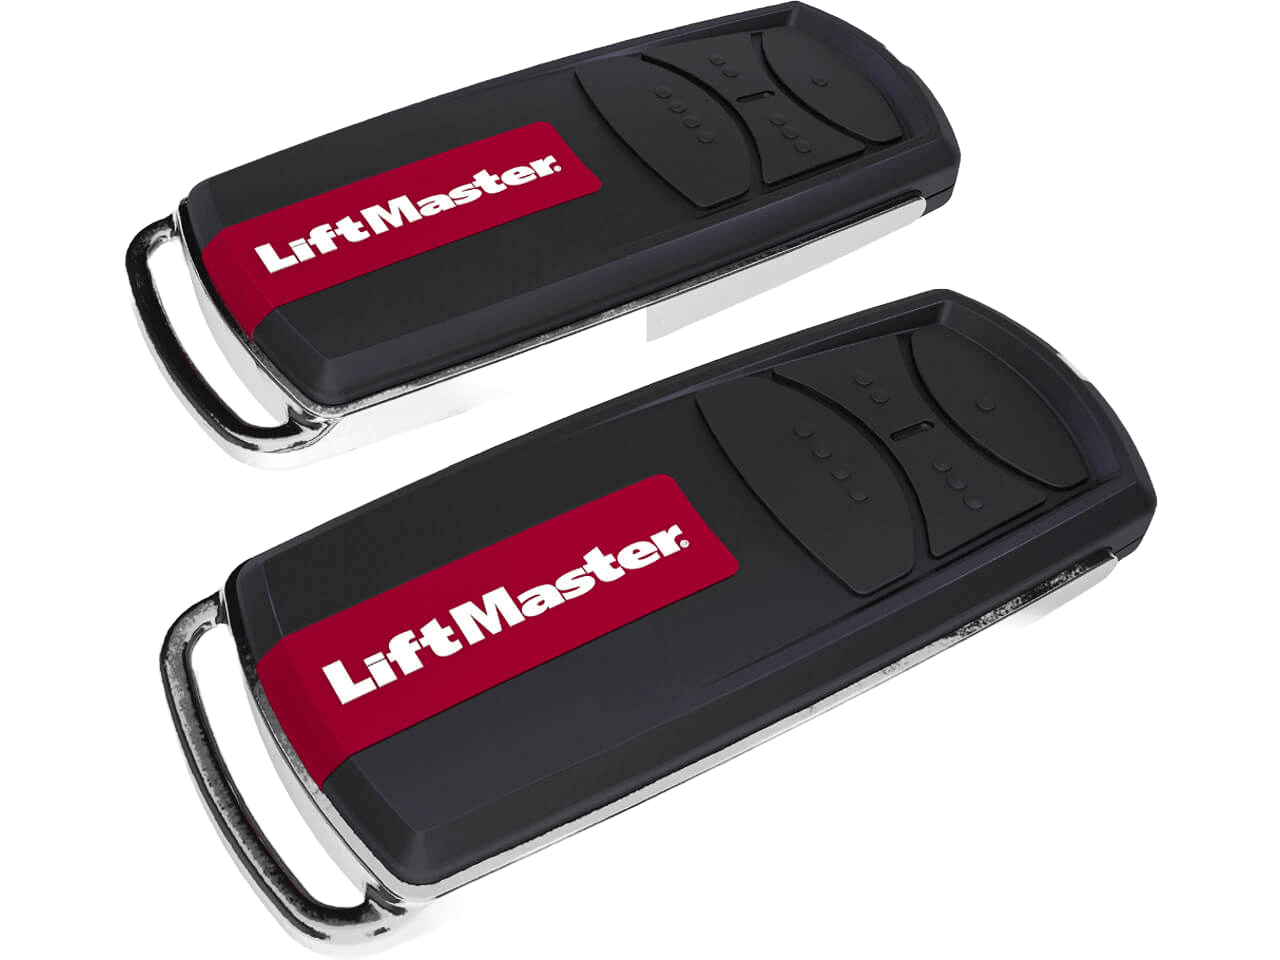 LiftMaster LM55EVF Residential Garage Door Opener 600N up to 90 kg Door Weight